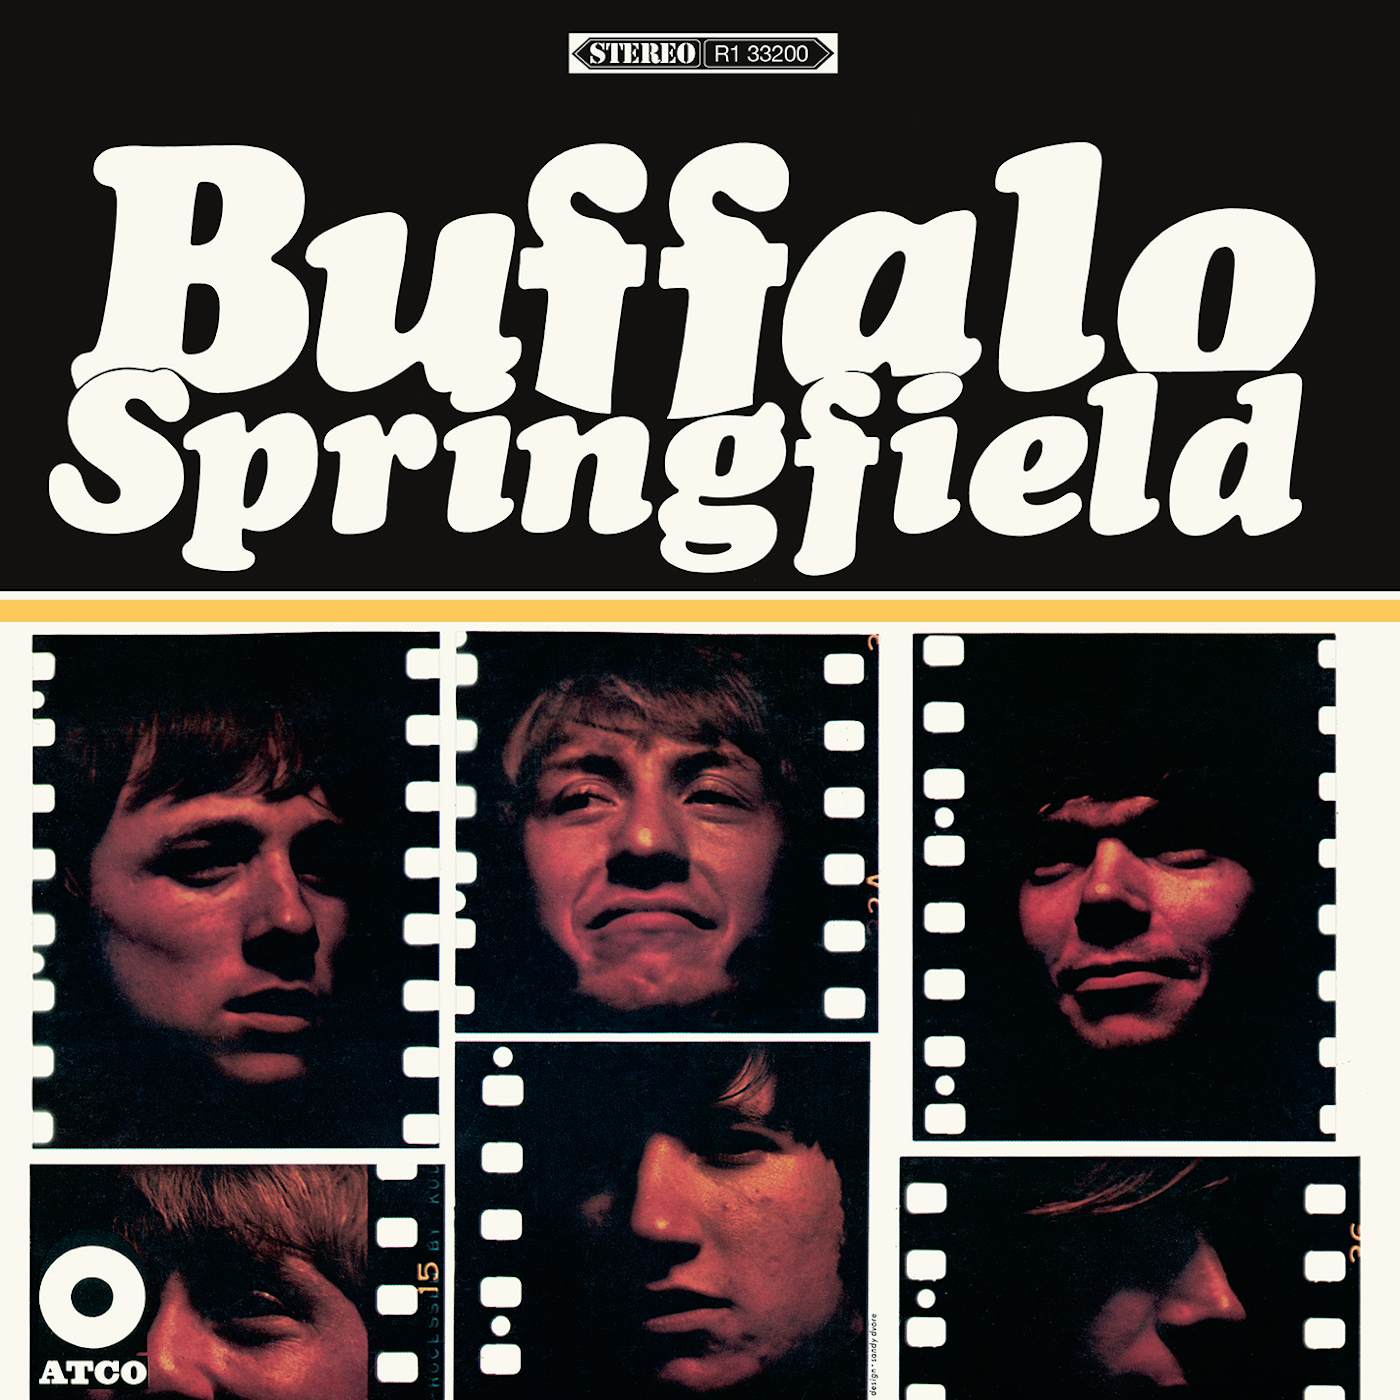 Buffalo Springfield Vinyl Record